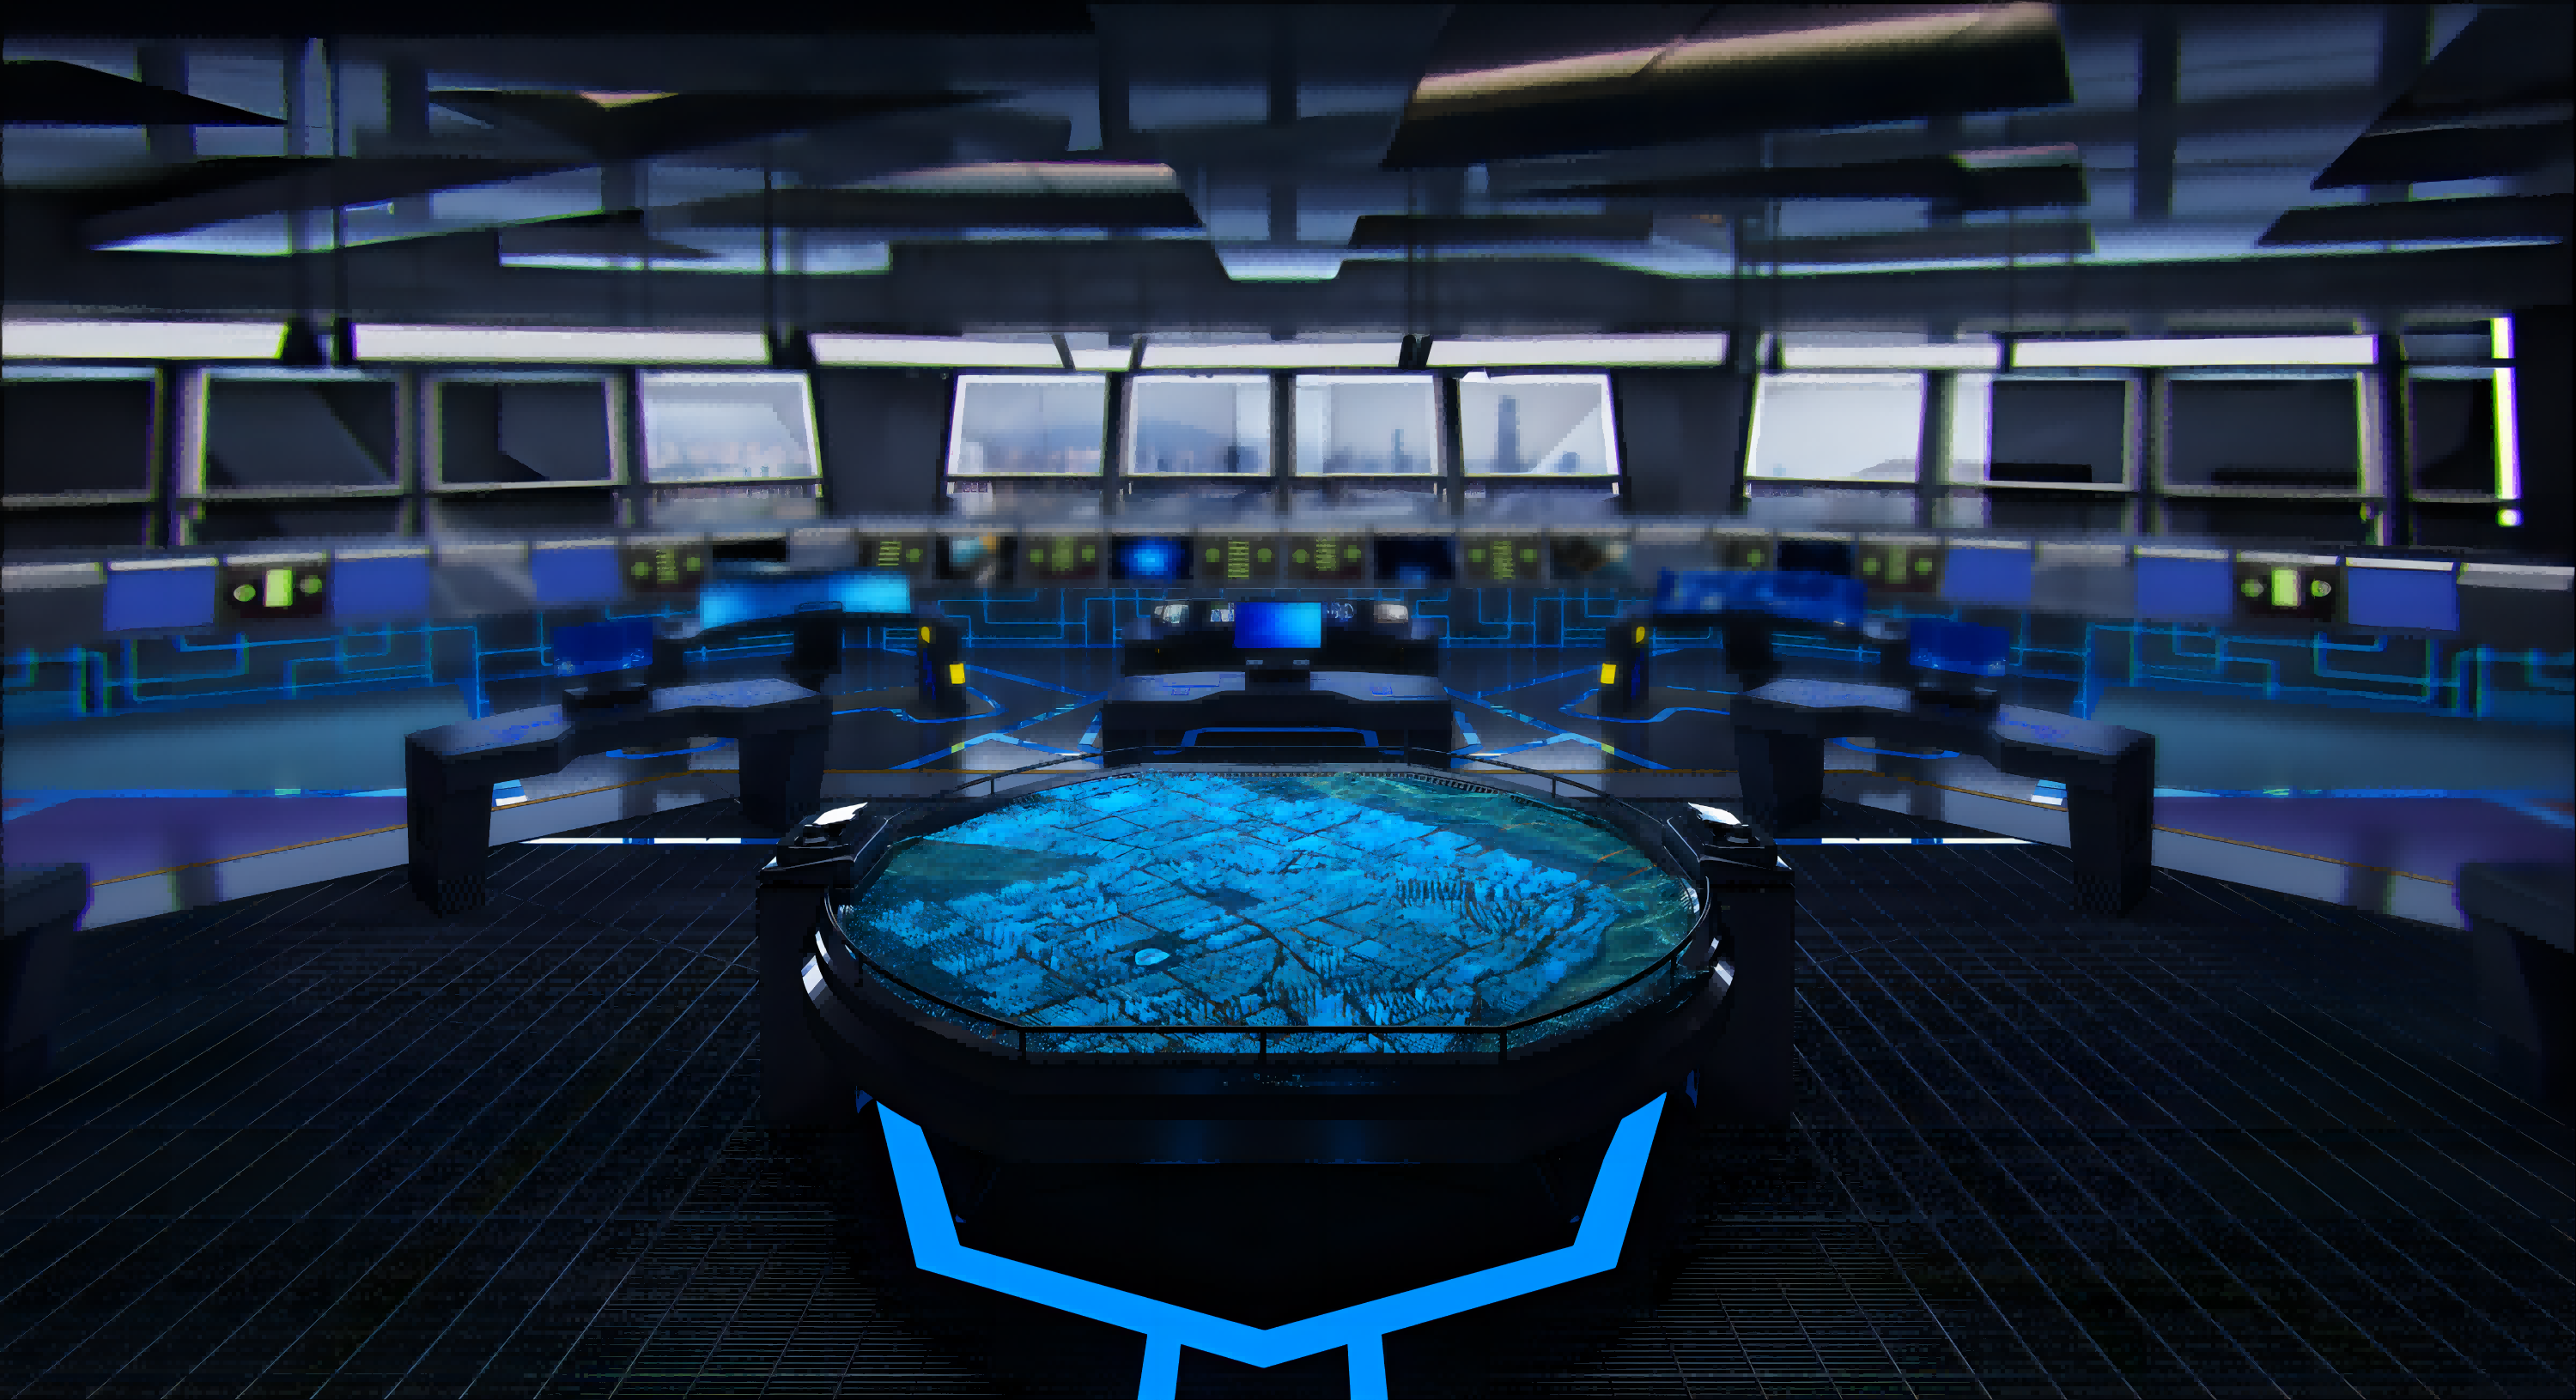 这是一张高科技控制室的图片，中央有一个圆形显示屏，四周是多个监控屏幕，整体色调以蓝色和黑色为主，显得未来感十足。